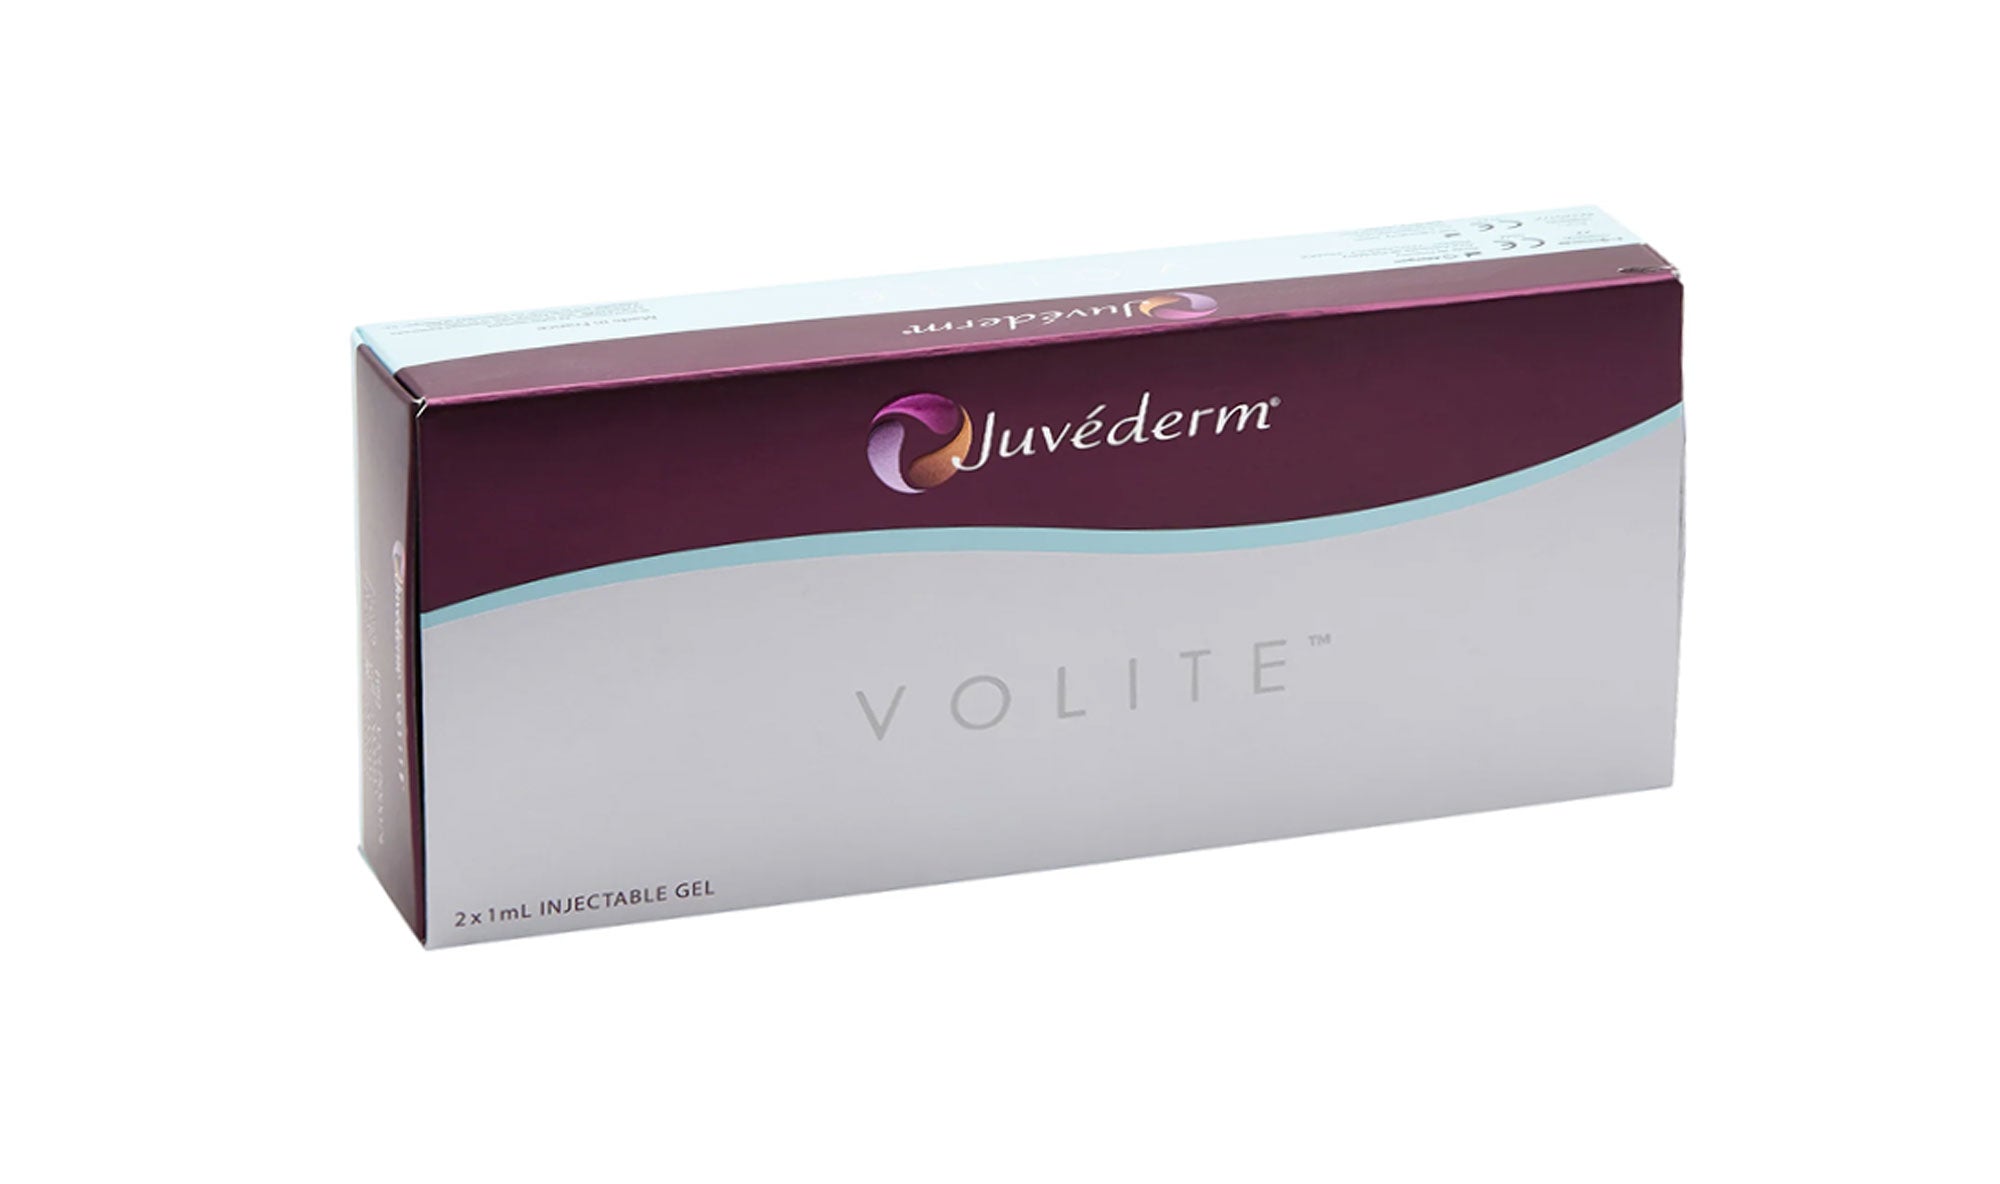 Juvèderm Volite – Packung mit 2 Spritzen à 1 ml